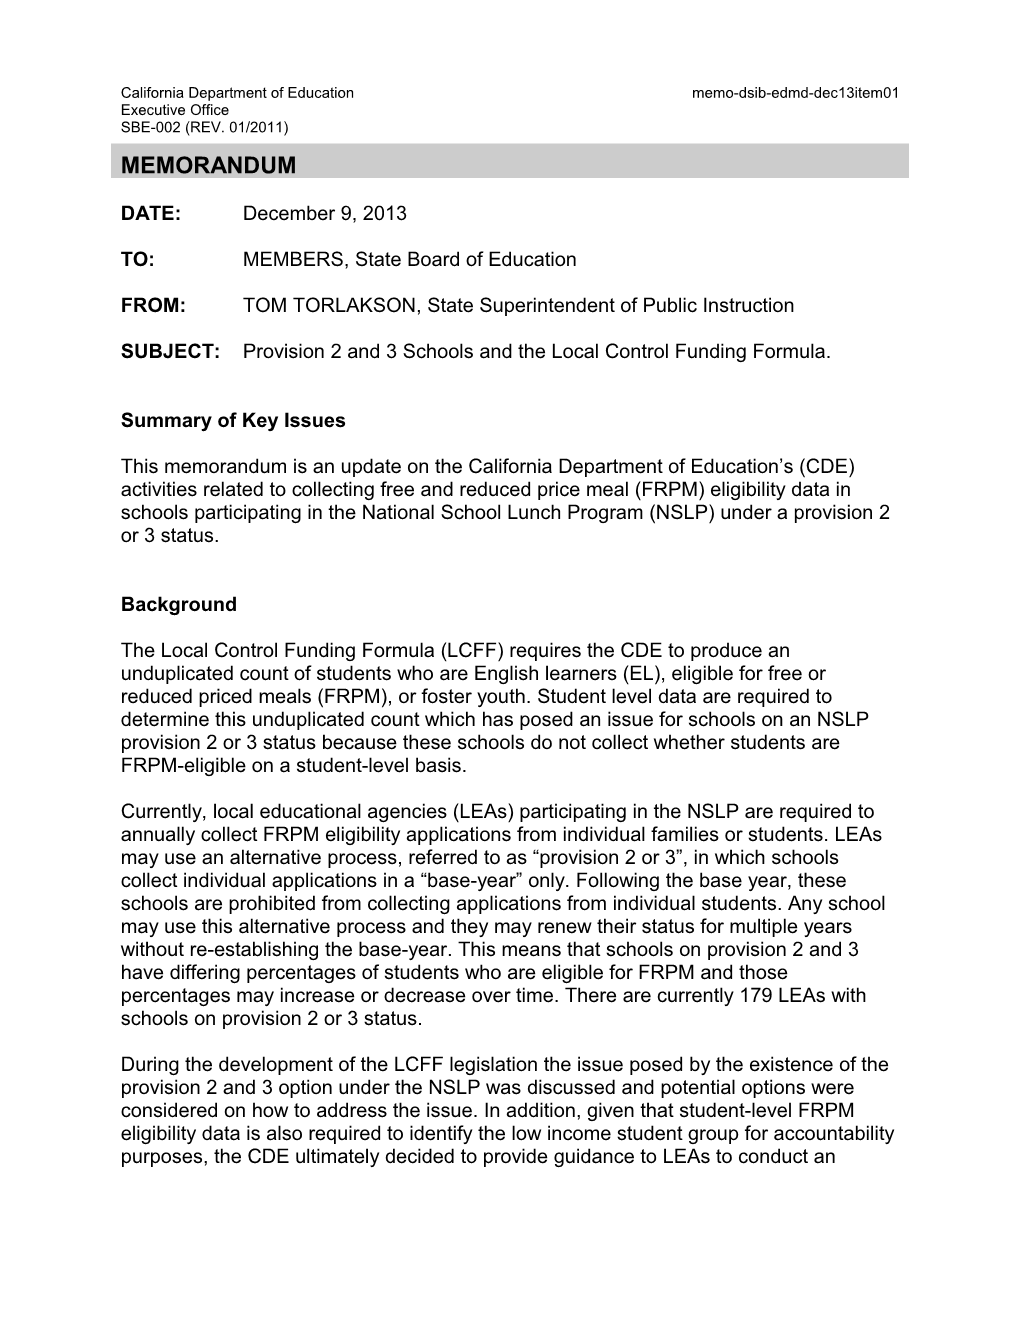 December 2013 EDMD Memo Item 01 - Information Memorandum (CA State Board of Education)